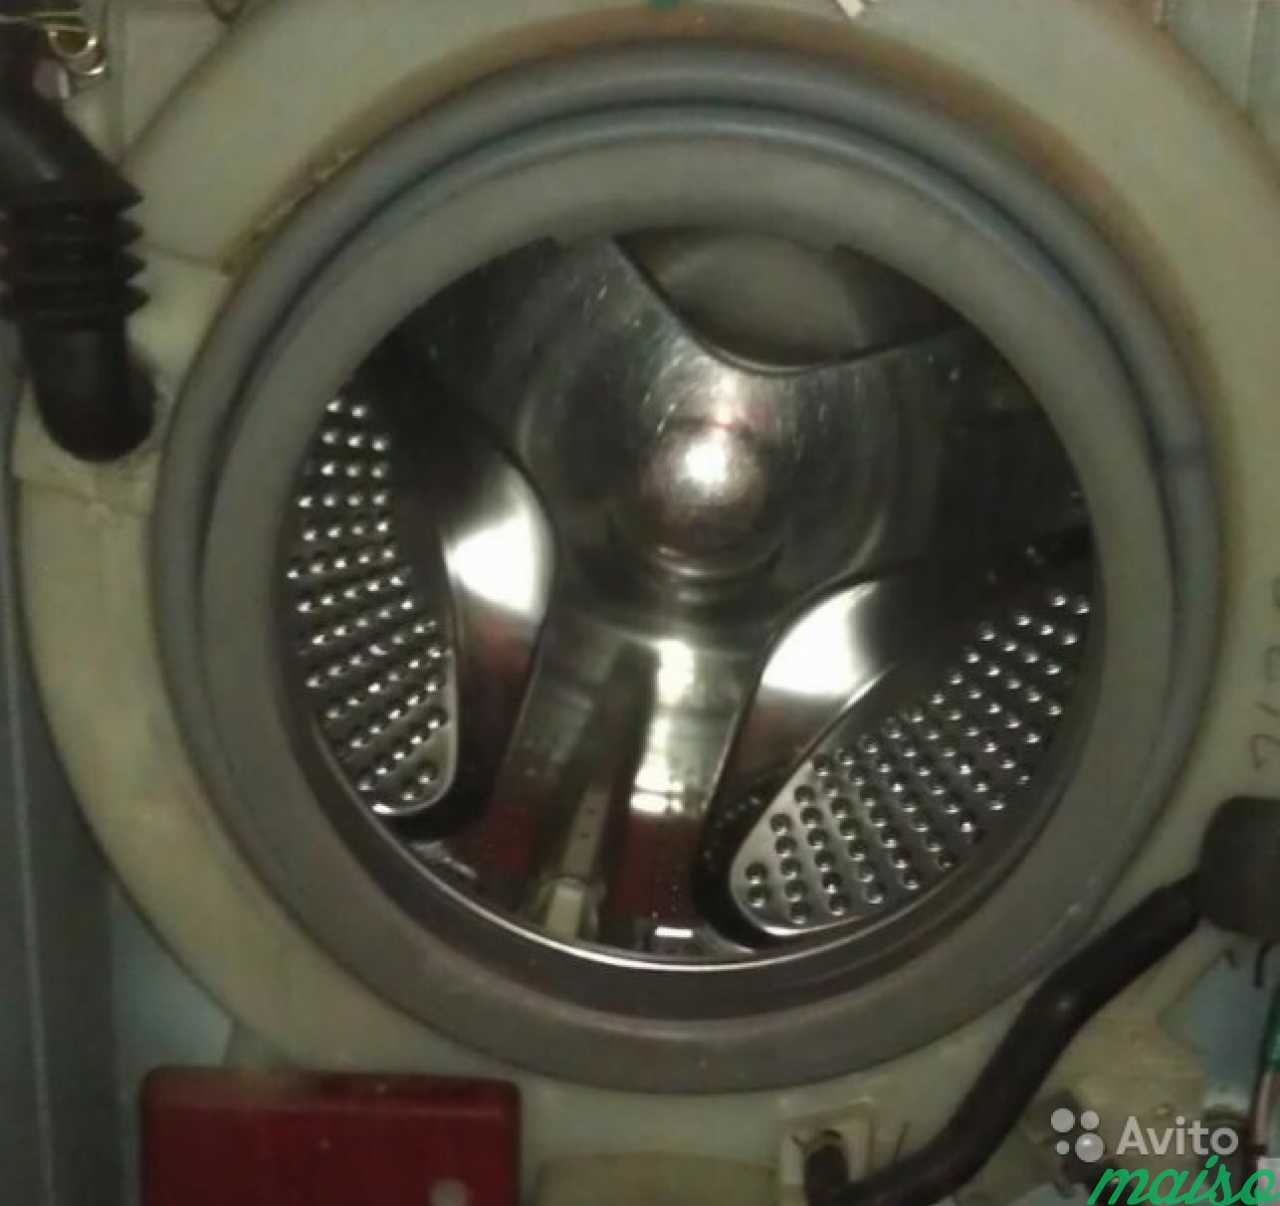 Ремонт стиральных машин в Москве. Фото 6